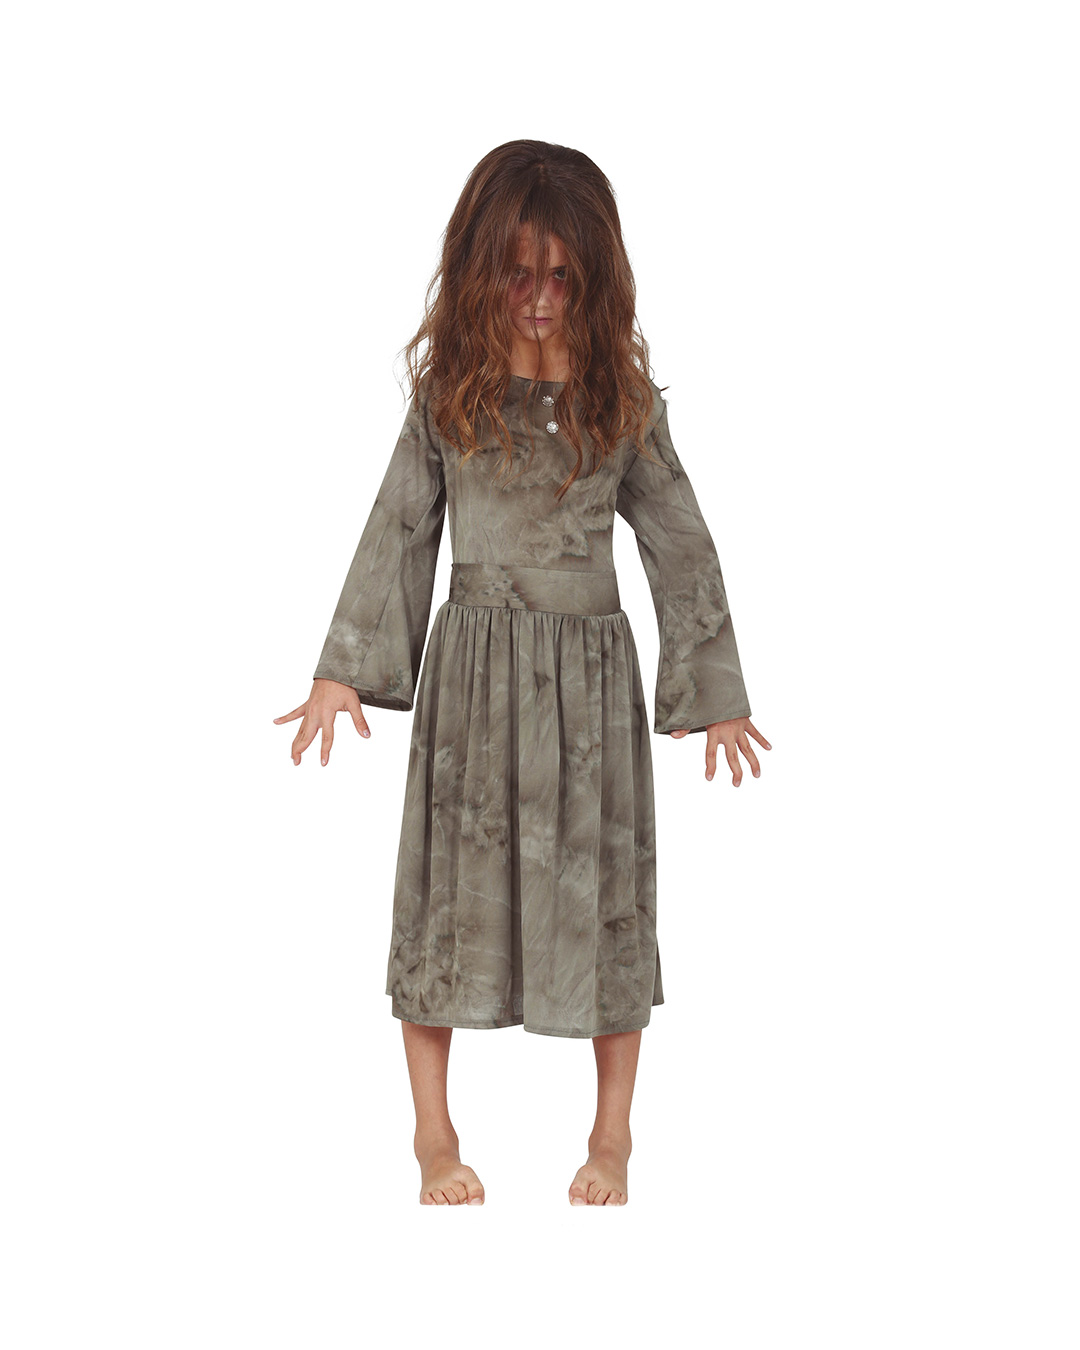 Geistermädchen Kinderkostüm ▶ Halloween Verkleidung 7-9 Jahre von Horror-Shop.com